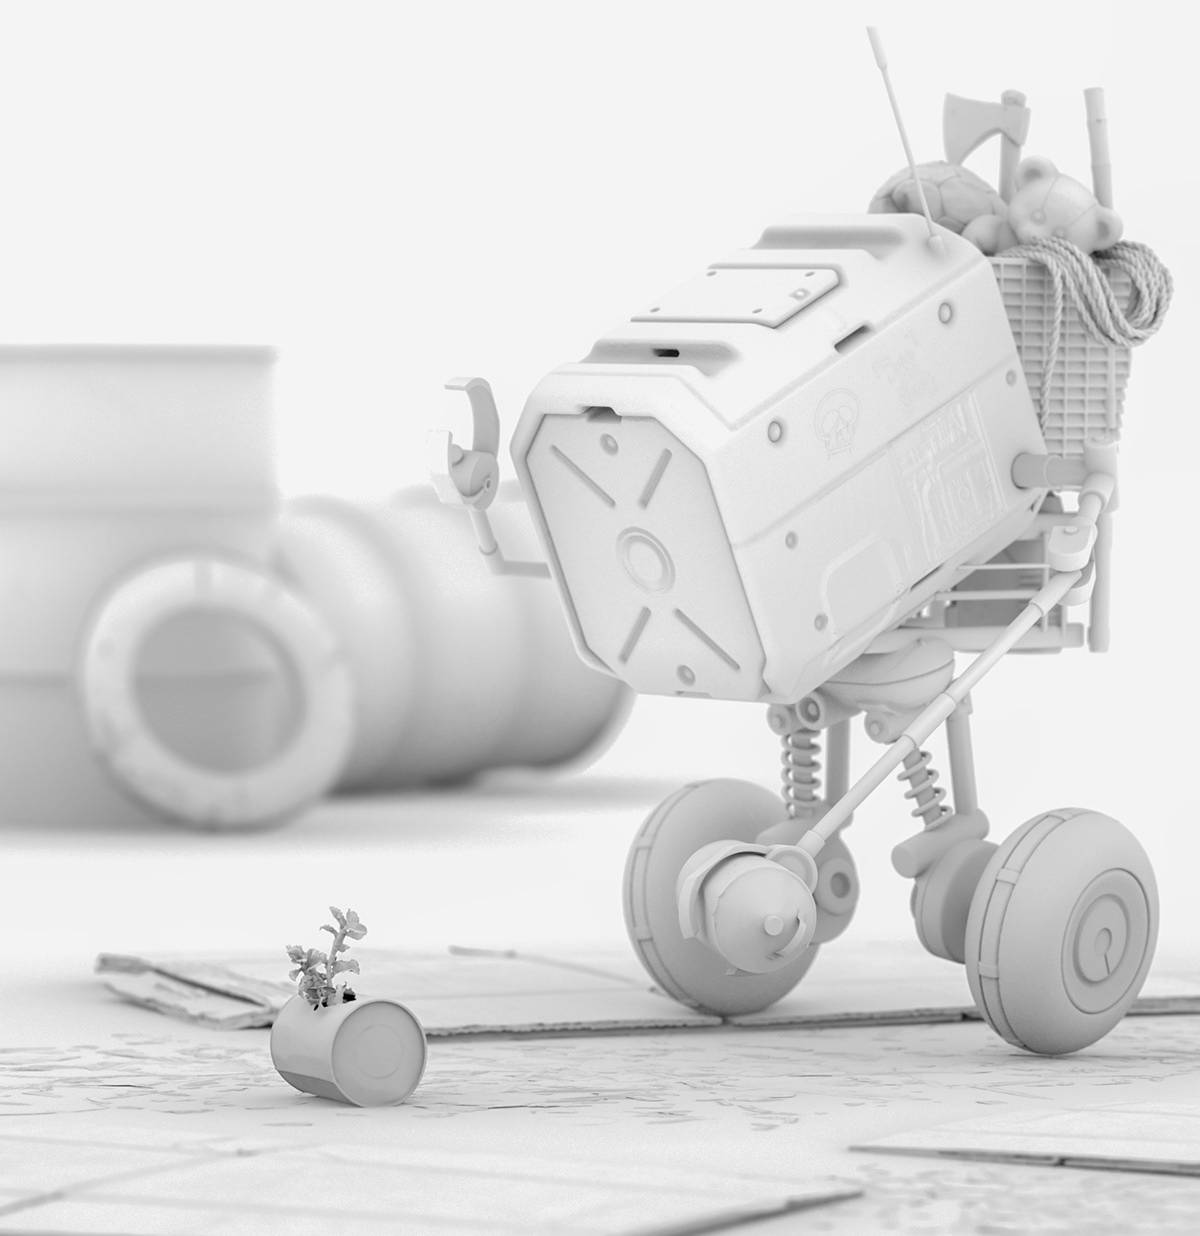 3D 3dcoat 3ds max CGI concept art corona design Quixel Render robot